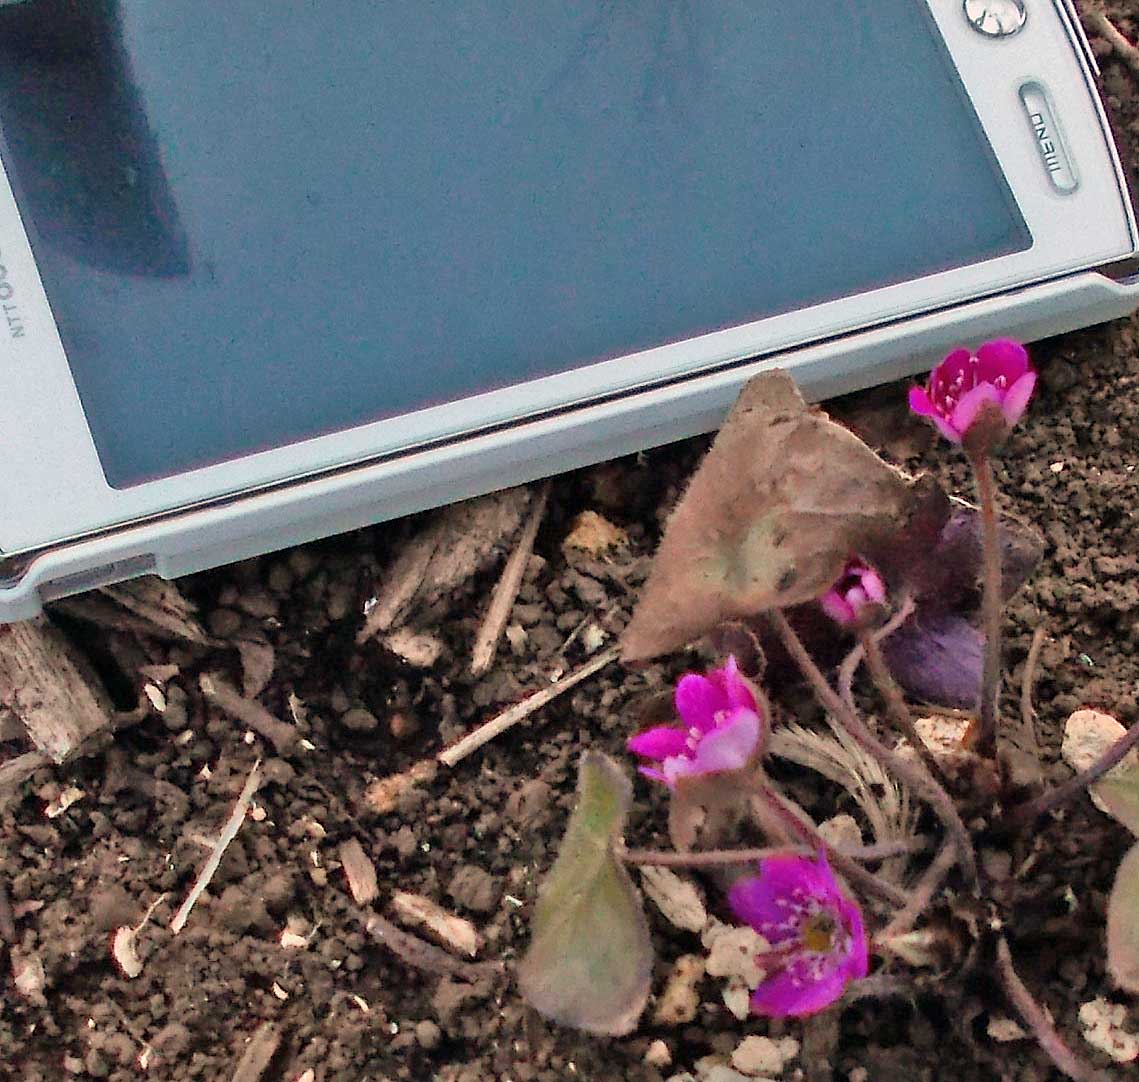 石神井公園で、”セツブンソウ” や ”ミスミソウ” とか ”蕗の薹” が咲いています。 画像